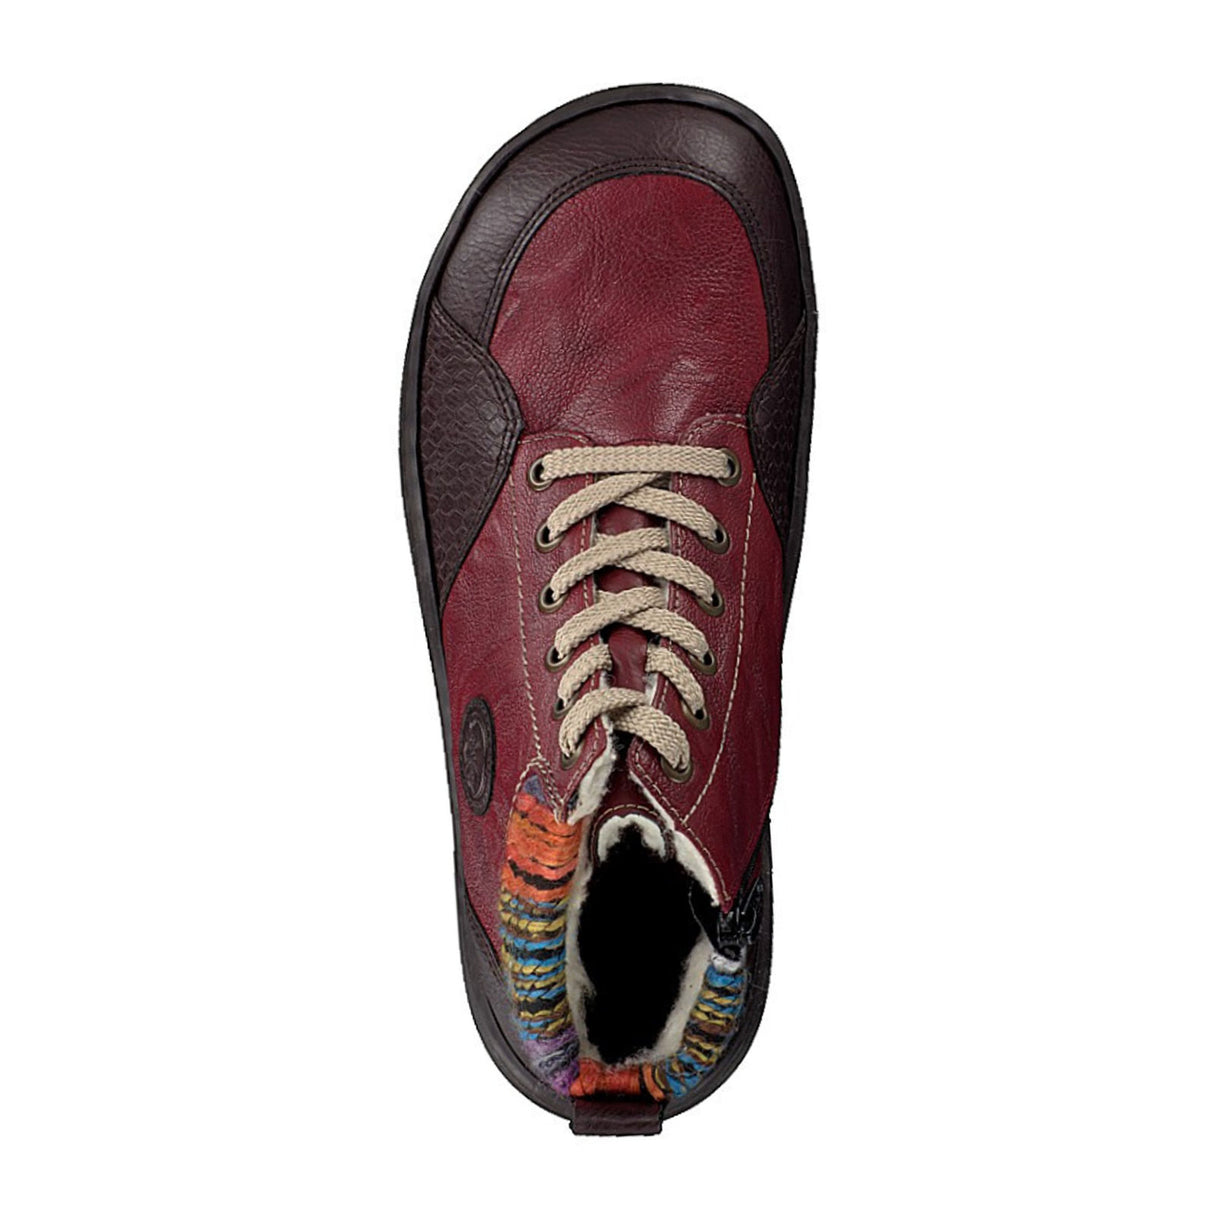 Rieker 44442-25 Ankle Boot (Women) - Havanna/Merlot/Orange-Multi Boots - Fashion - Ankle Boot - The Heel Shoe Fitters